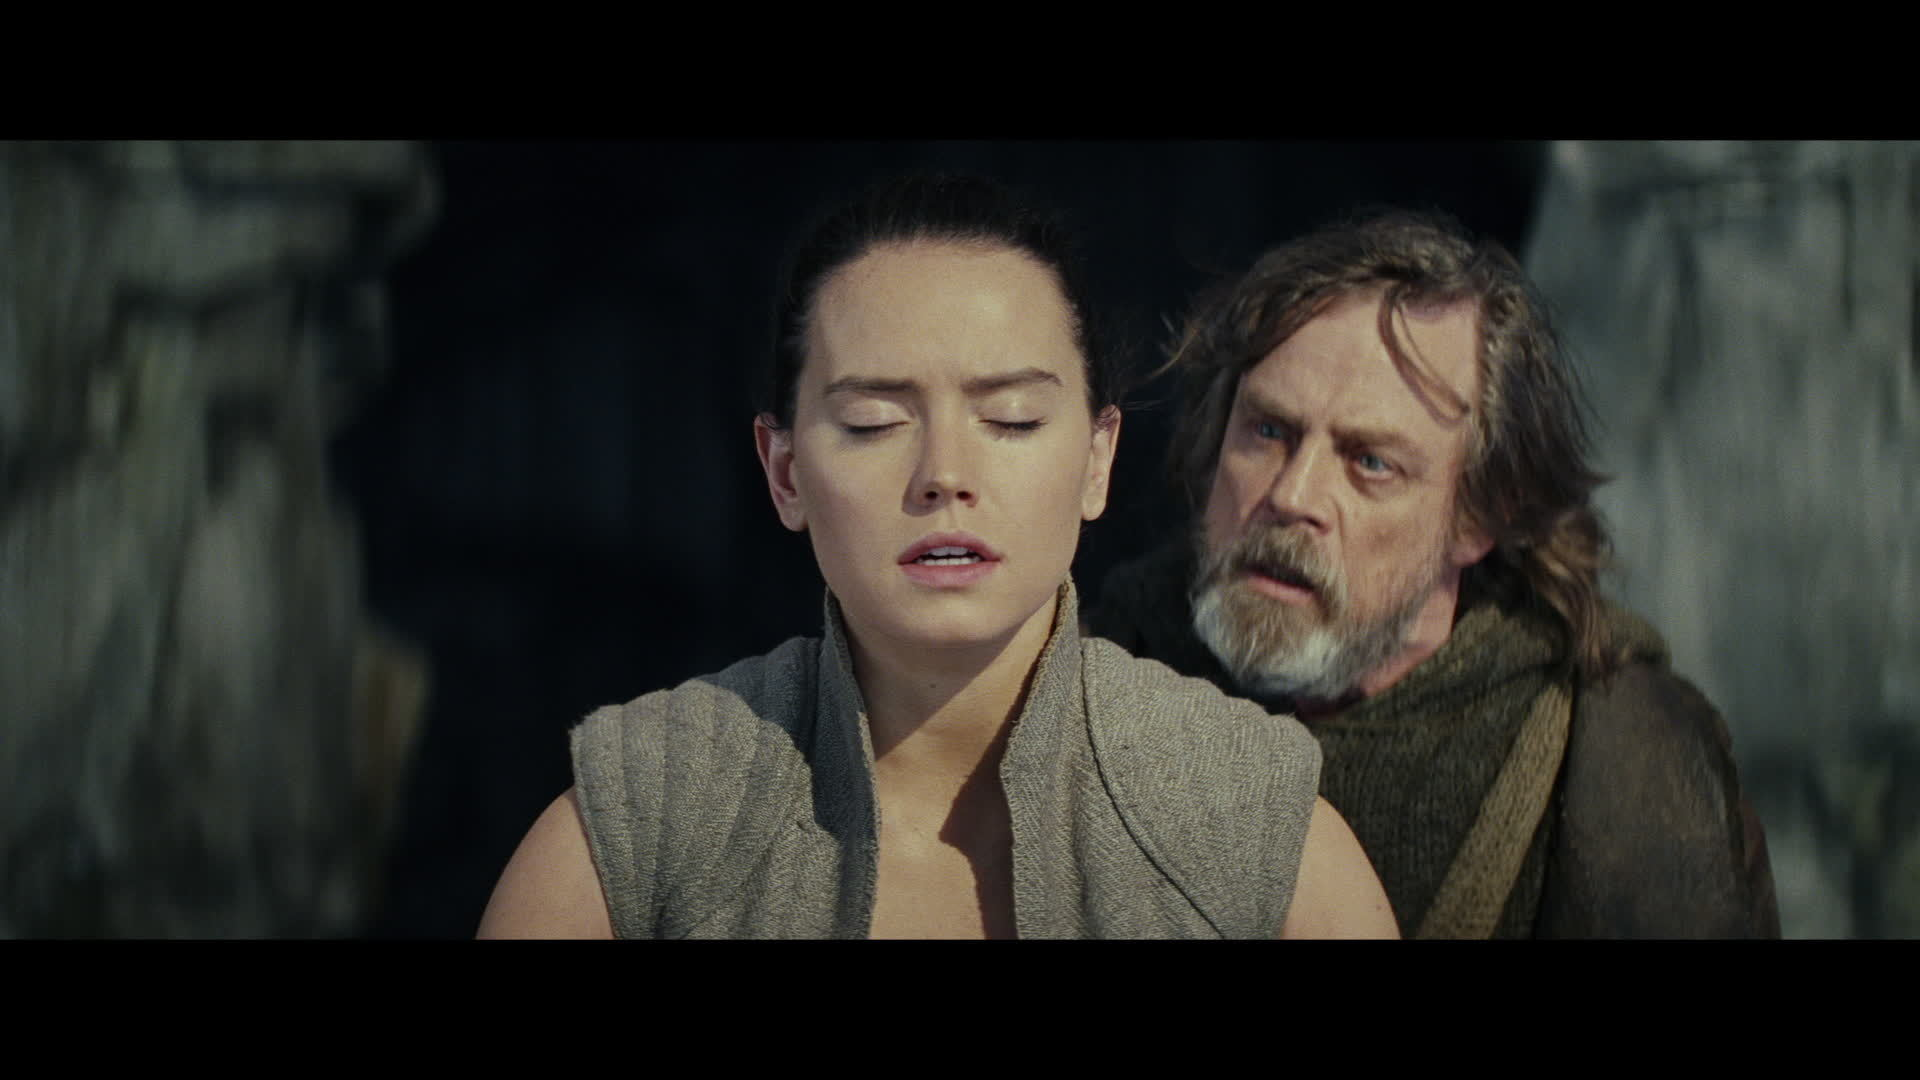 "Tempt" - Star Wars: The Last Jedi